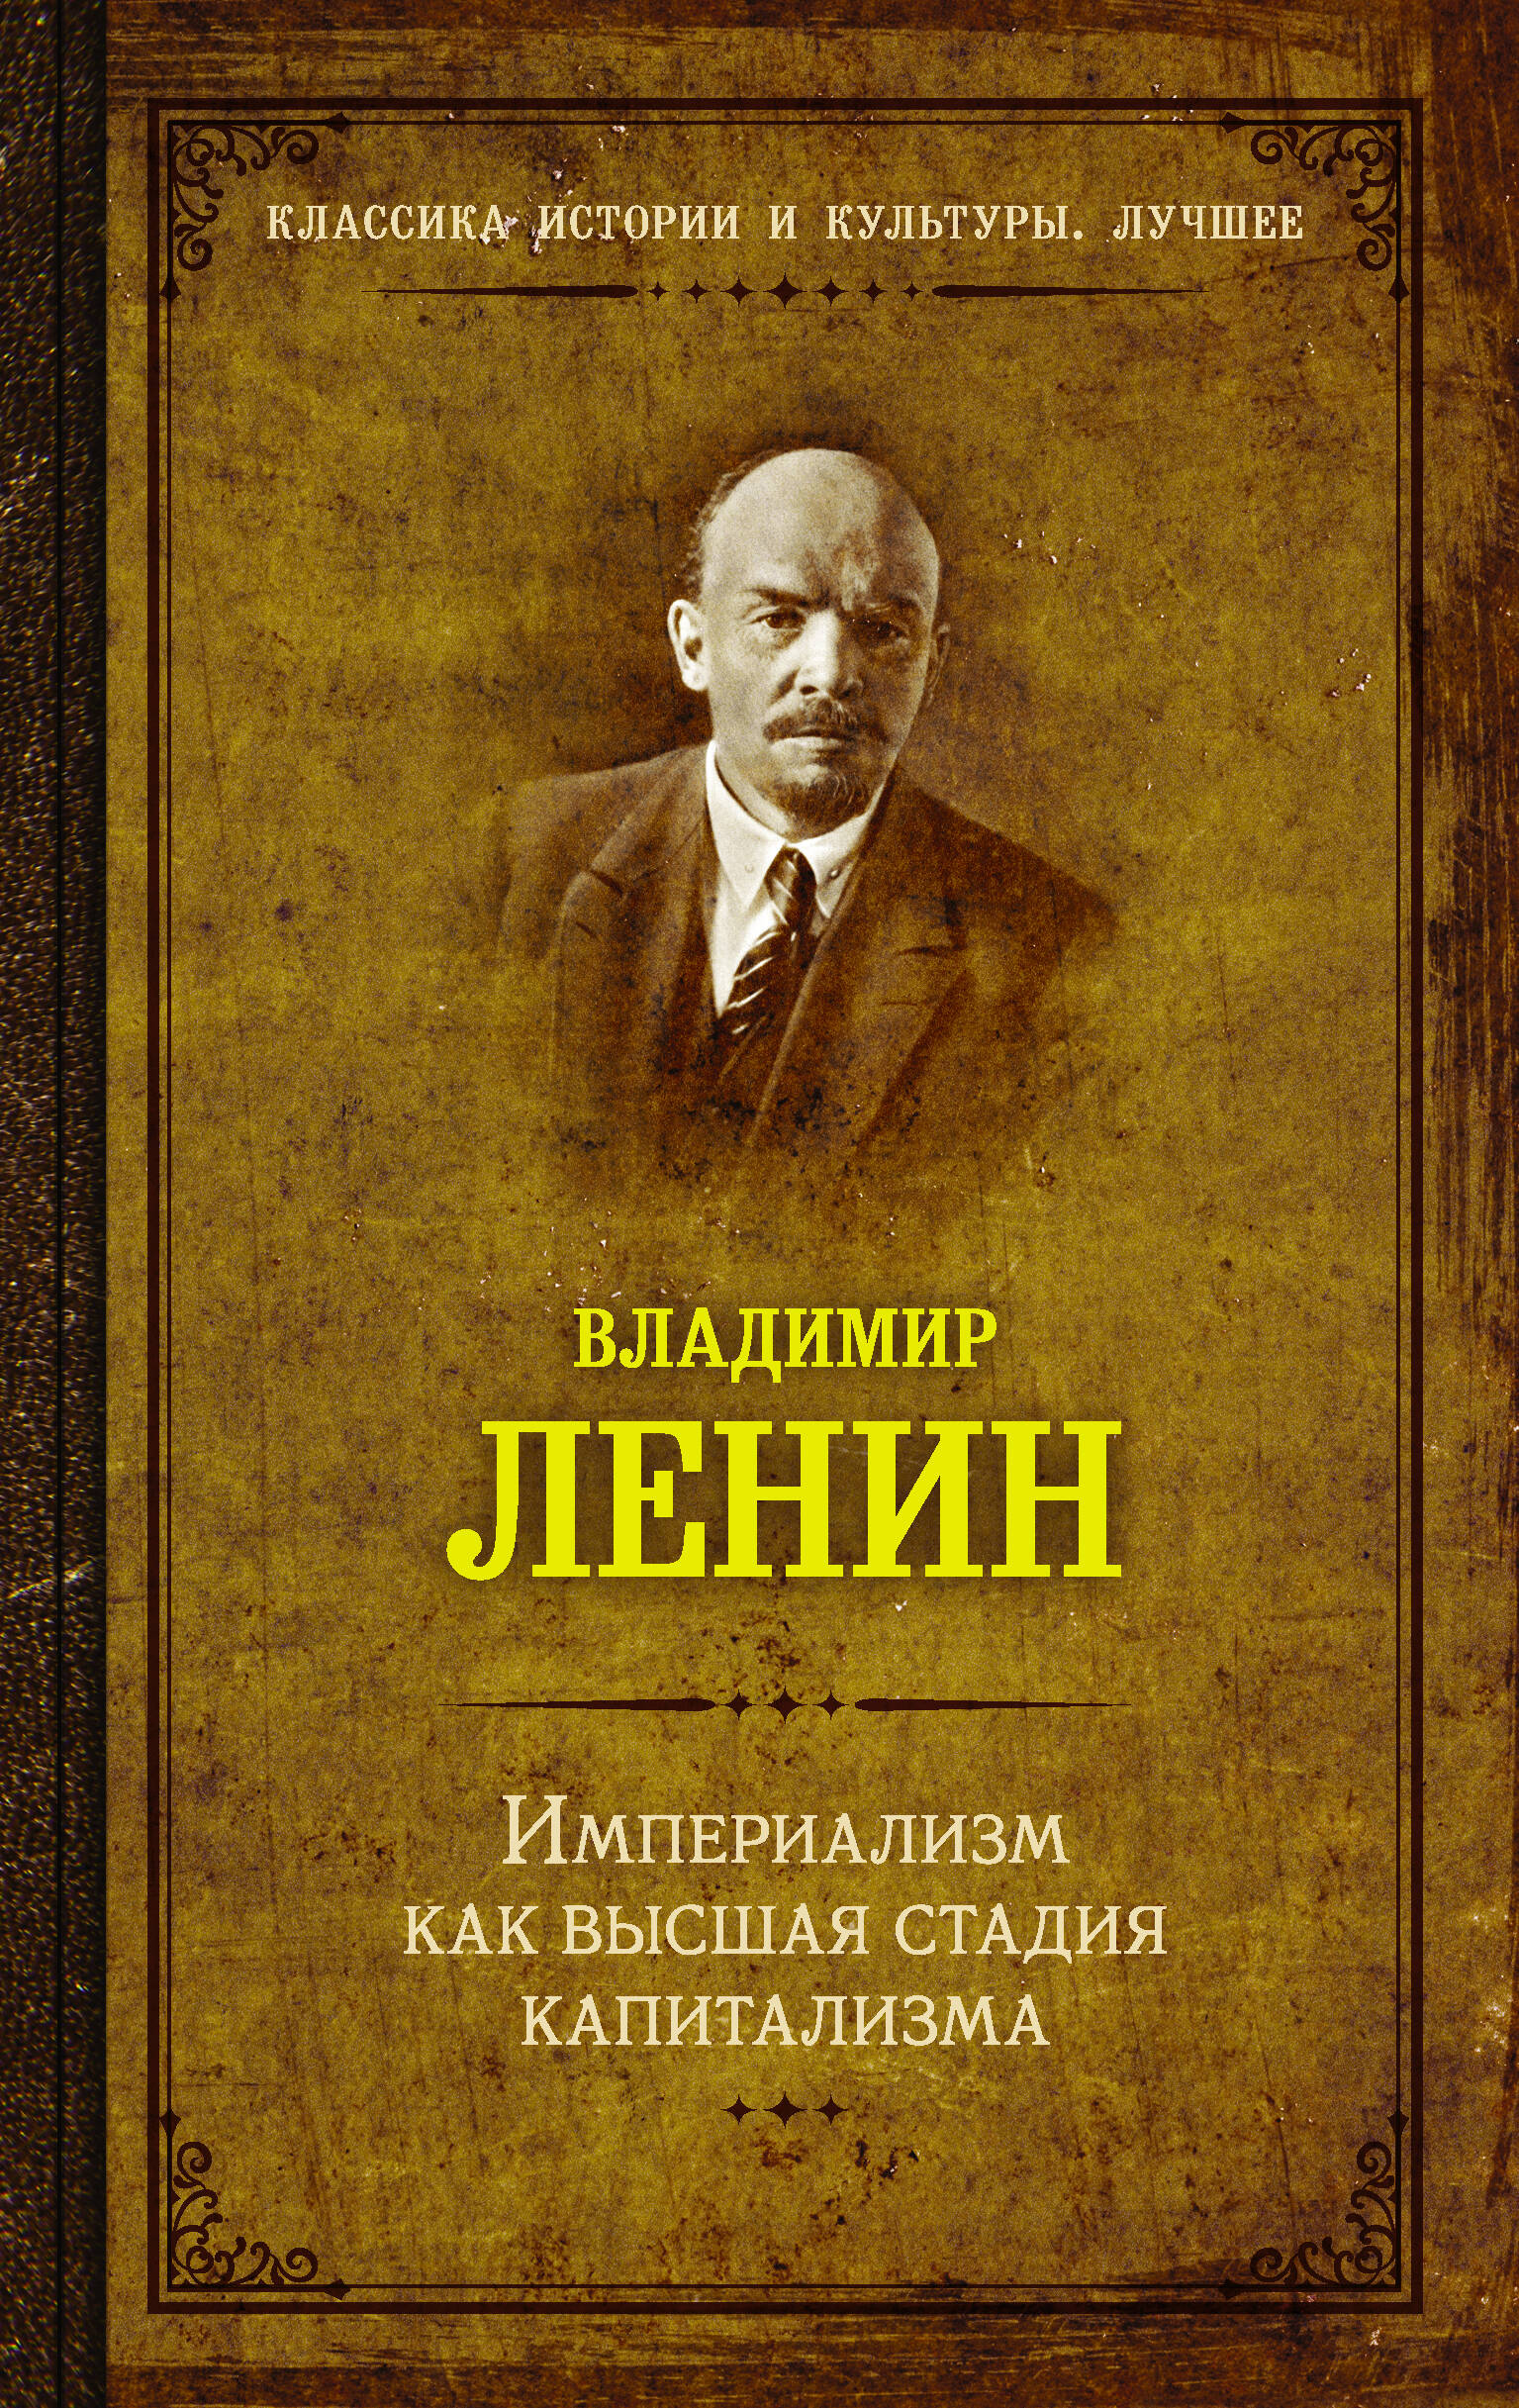 Ленин Владимир Ильич Империализм как высшая стадия капитализма - страница 0